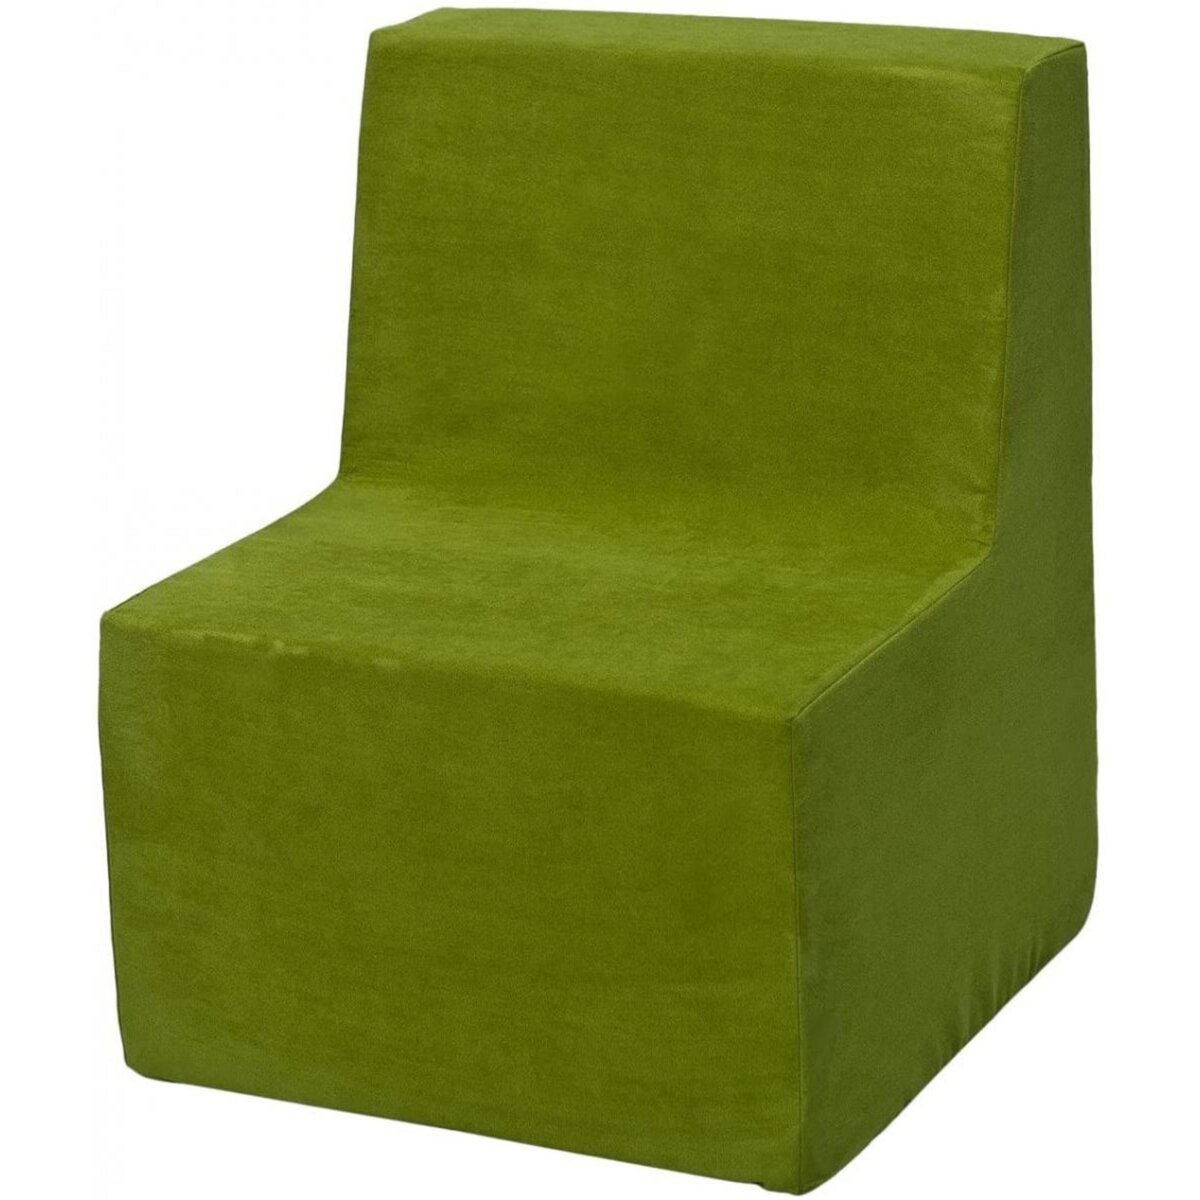  Chaise fauteuil pouf pour chambre d’enfant, jeu confort repos vert